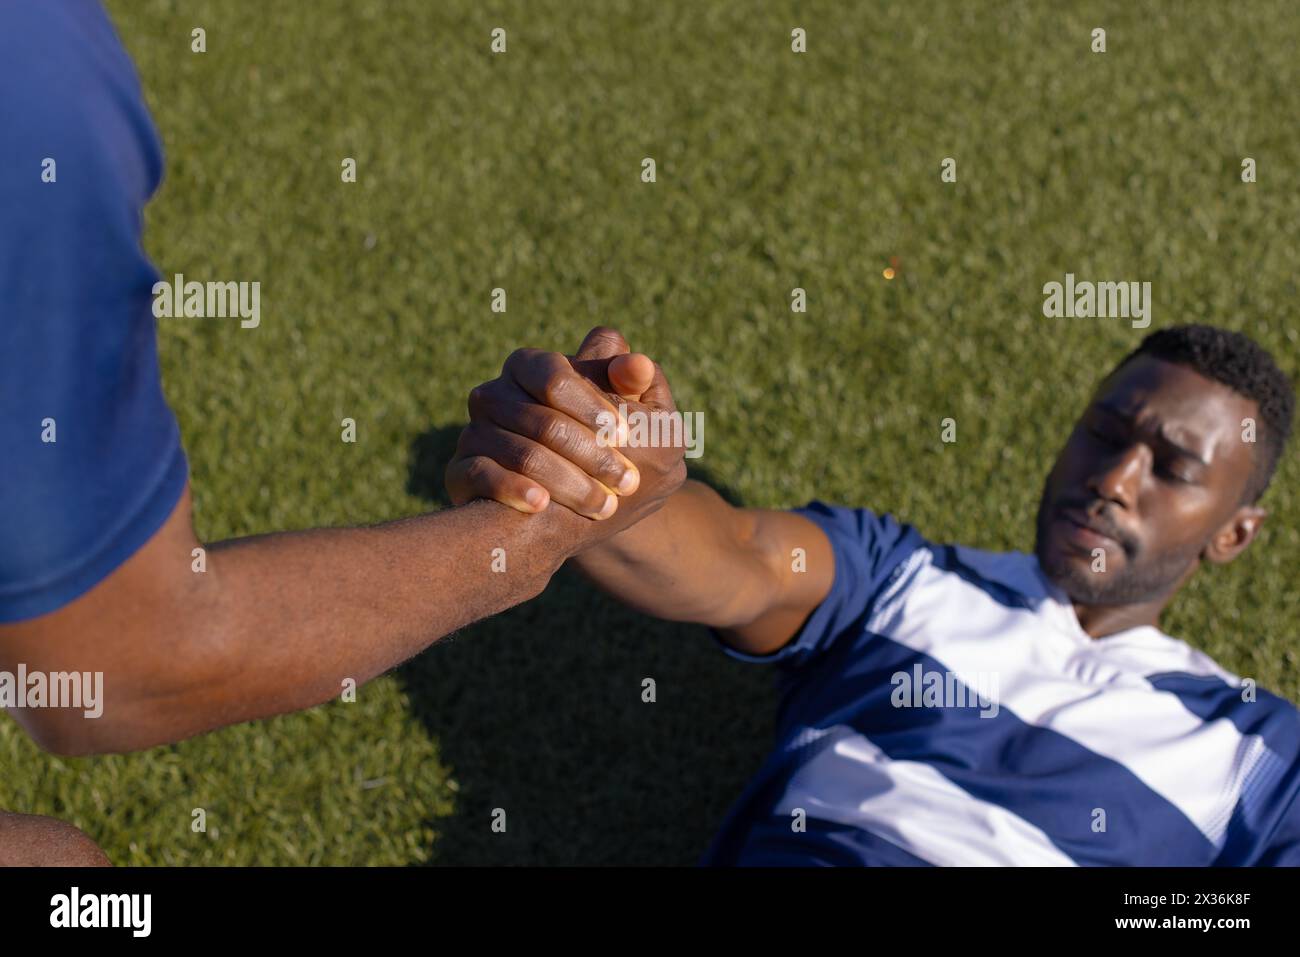 Deux athlètes masculins afro-américains s'entraînent sur un terrain, l'un assiste l'autre à se tenir debout Banque D'Images